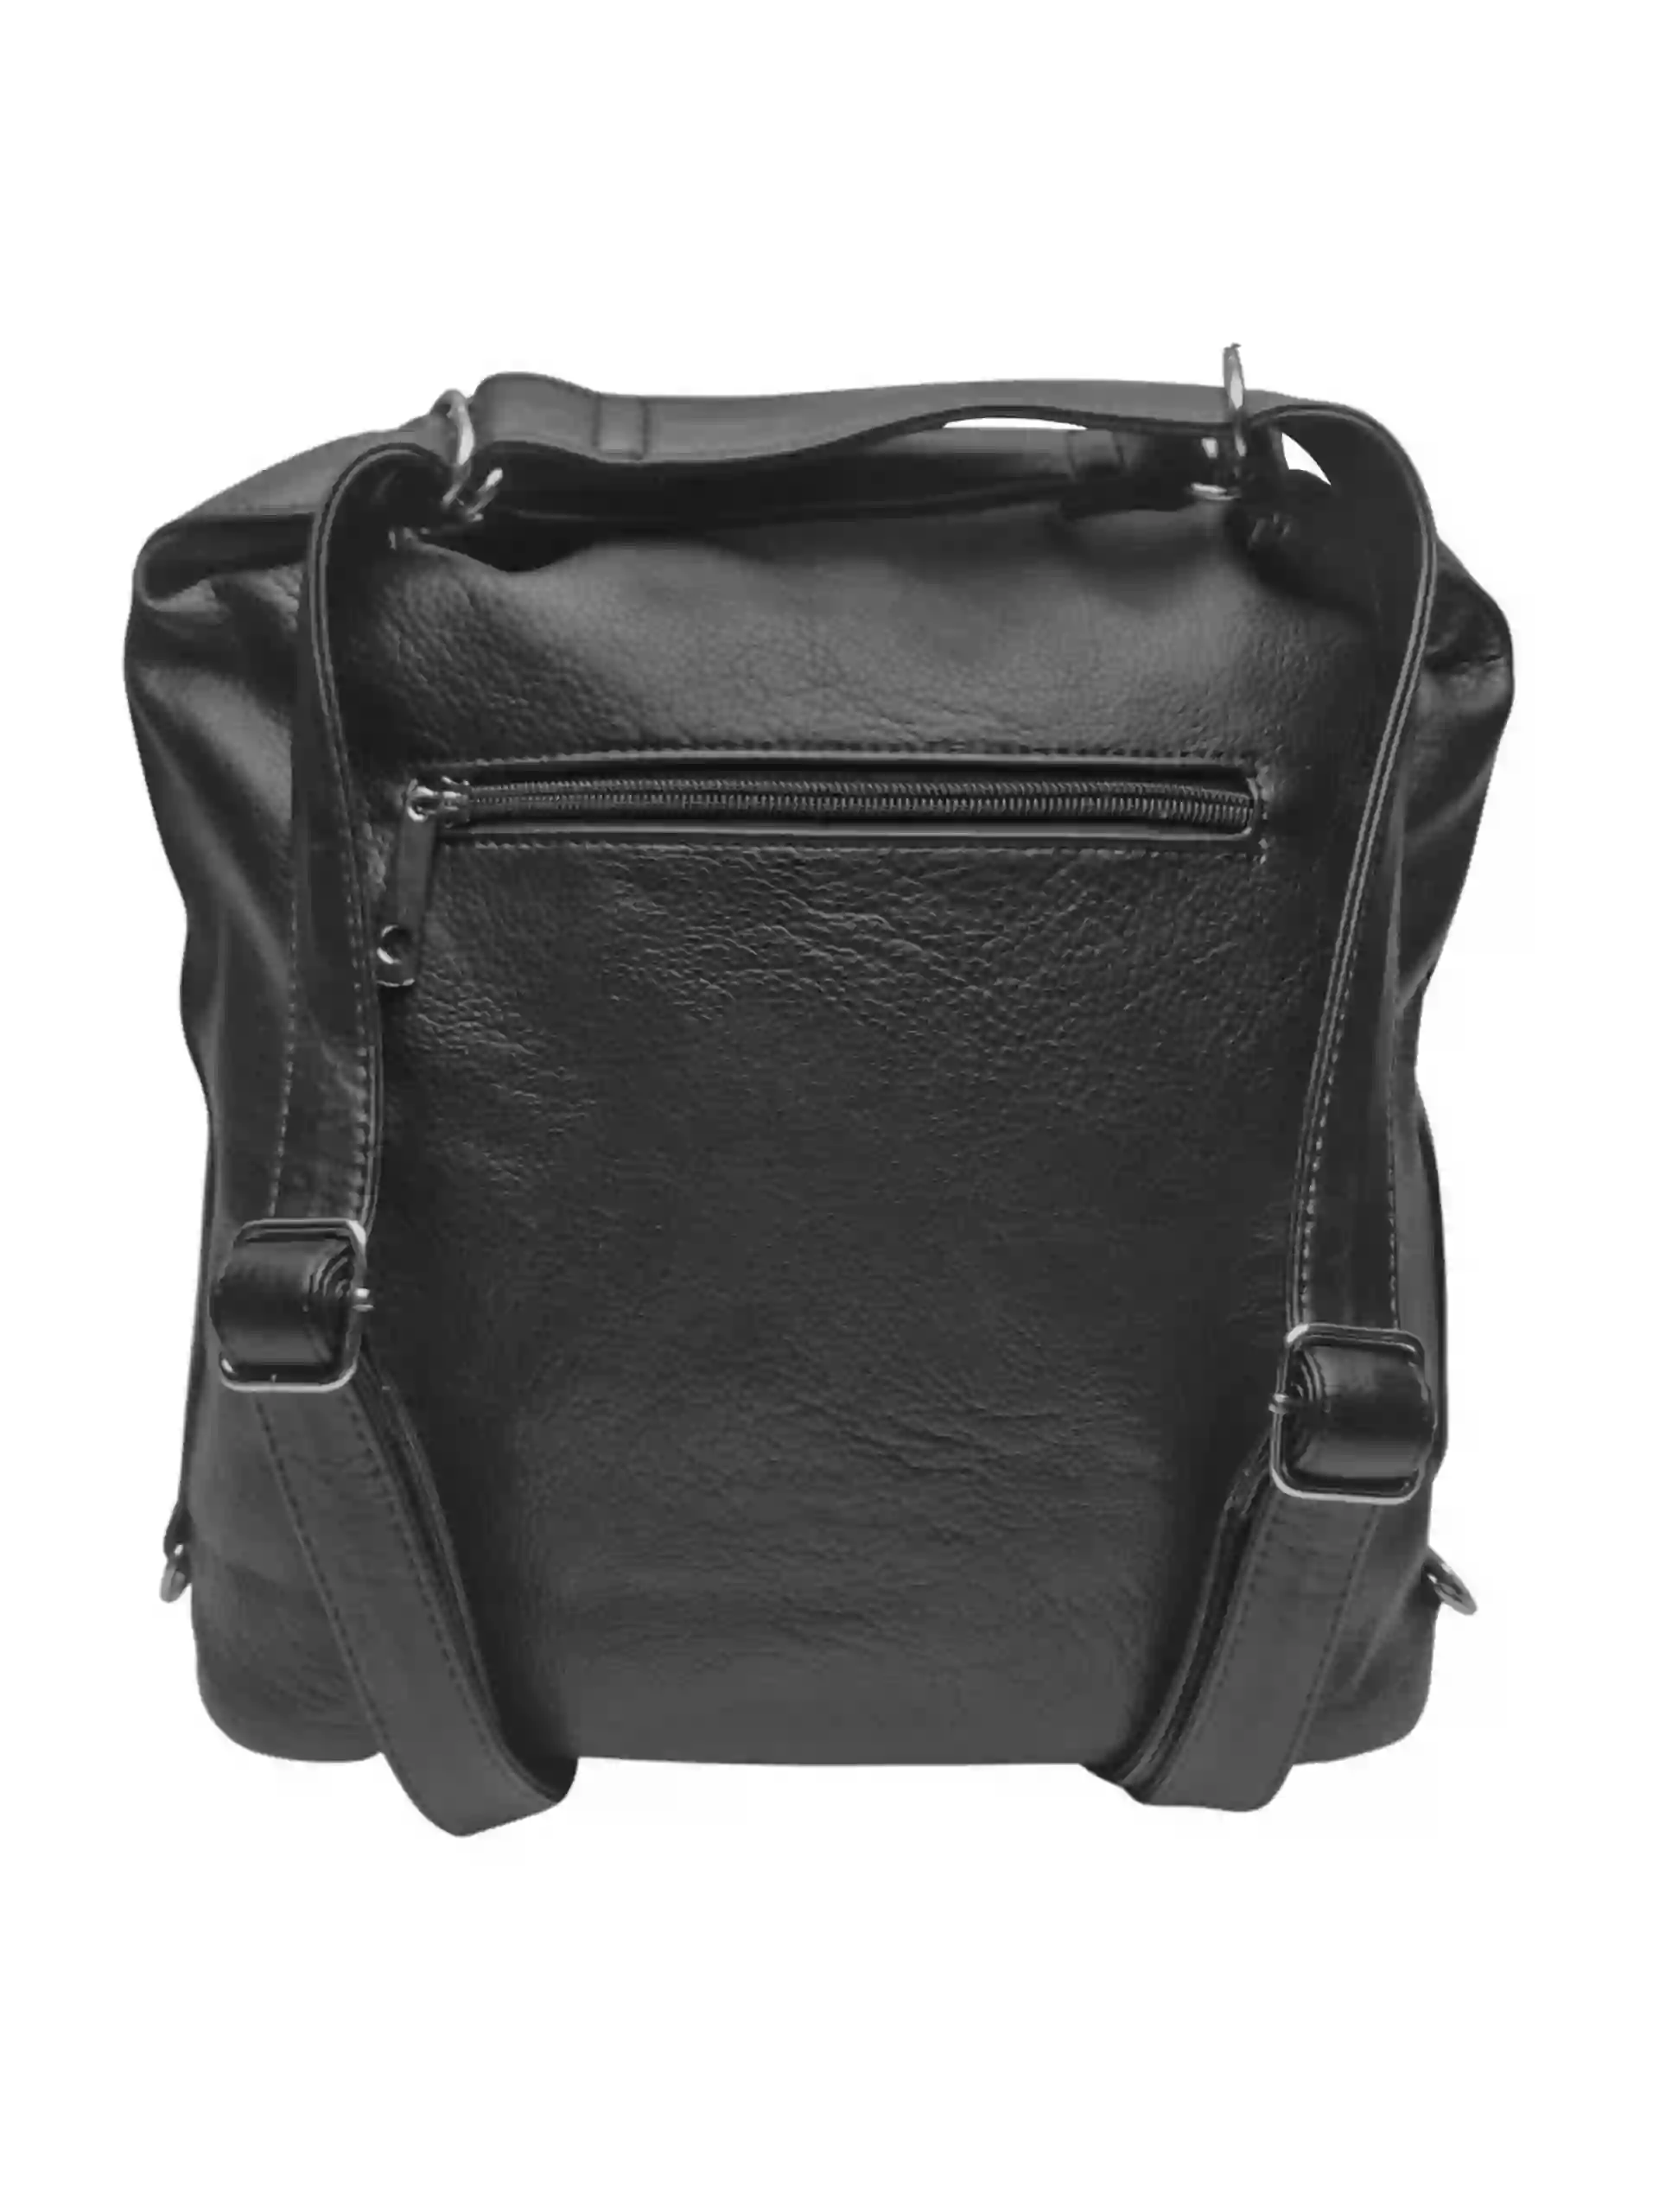 Velký černý kabelko-batoh 2v1 z eko kůže, Tapple, H20805, zadní strana kabelko-batohu 2v1 s popruhy